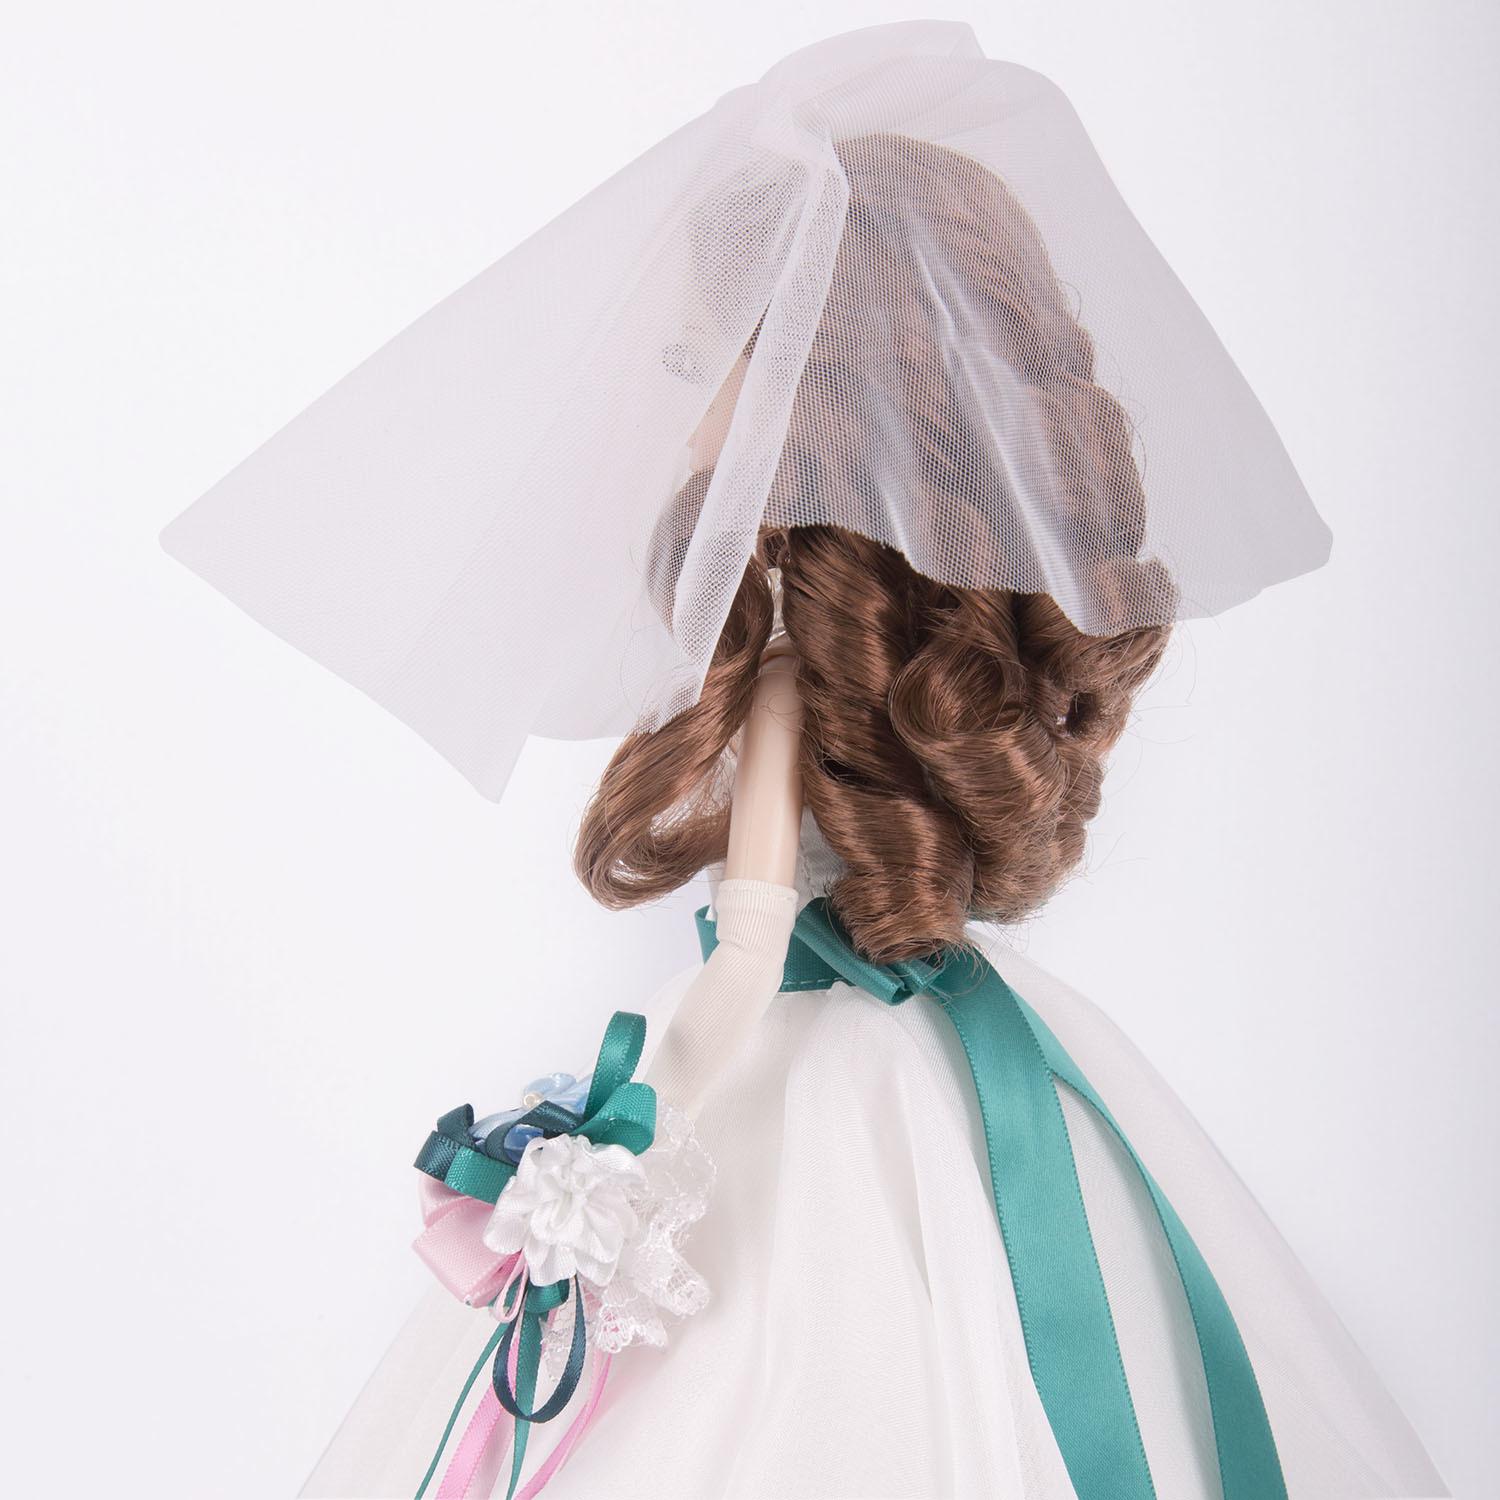 Кукла Sonya Rose, серия Gold collection, платье Глория  